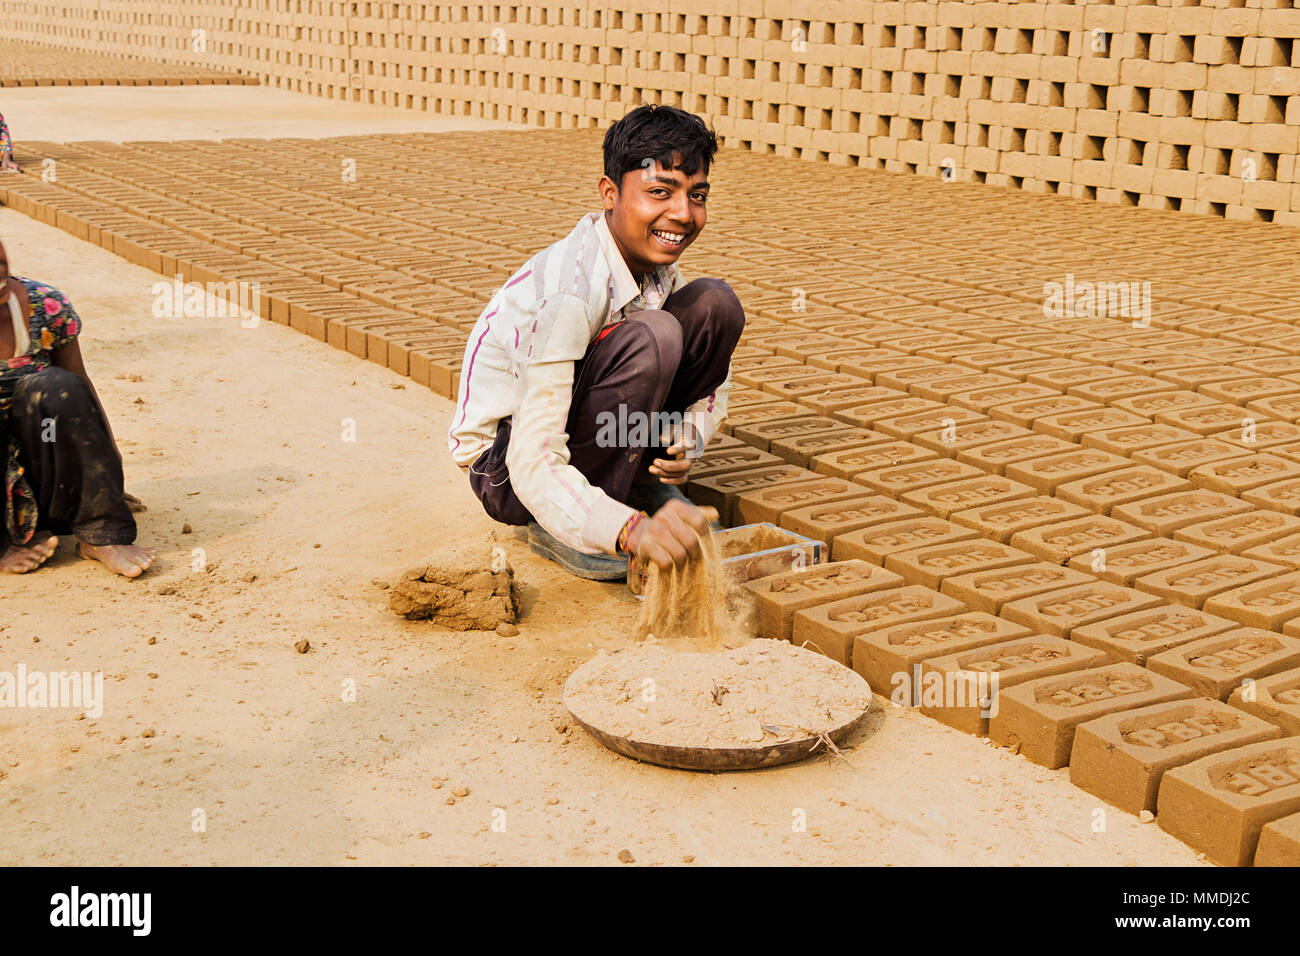 Arbeiter, der Junge die Ziegel im Werk Brick-Factory außerhalb Stockfoto